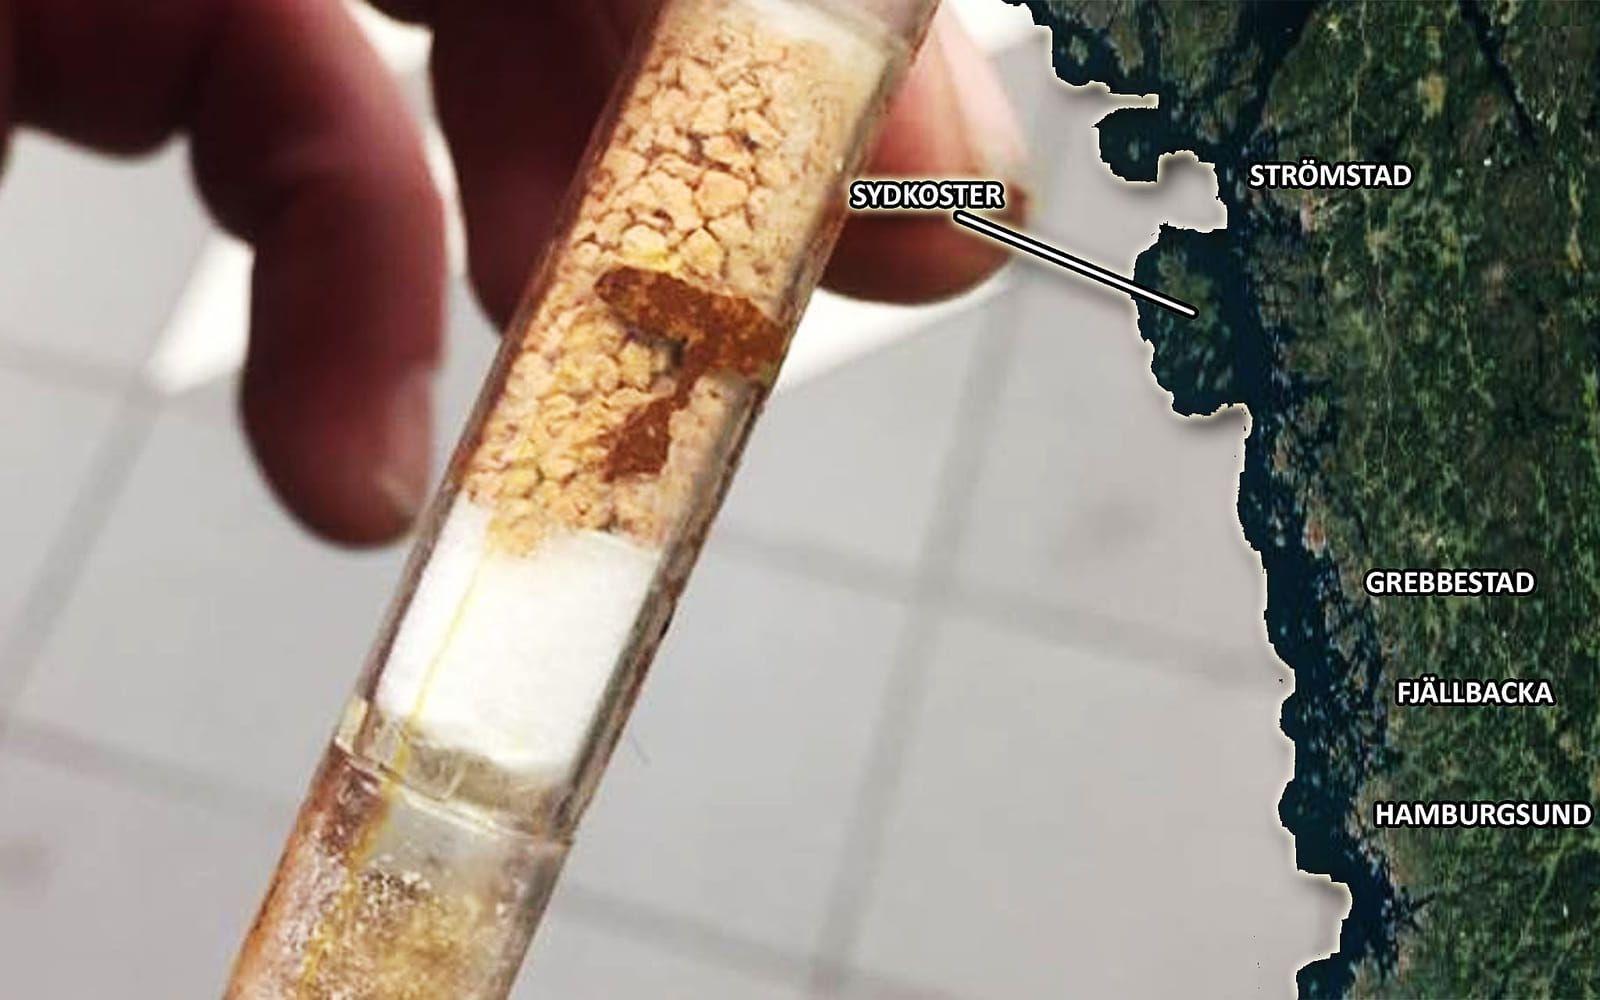 En glasampull har hittats på Sydkoster. Den misstänks innehålla det dödliga giftet cyanid. BILD:Espen de Lange
